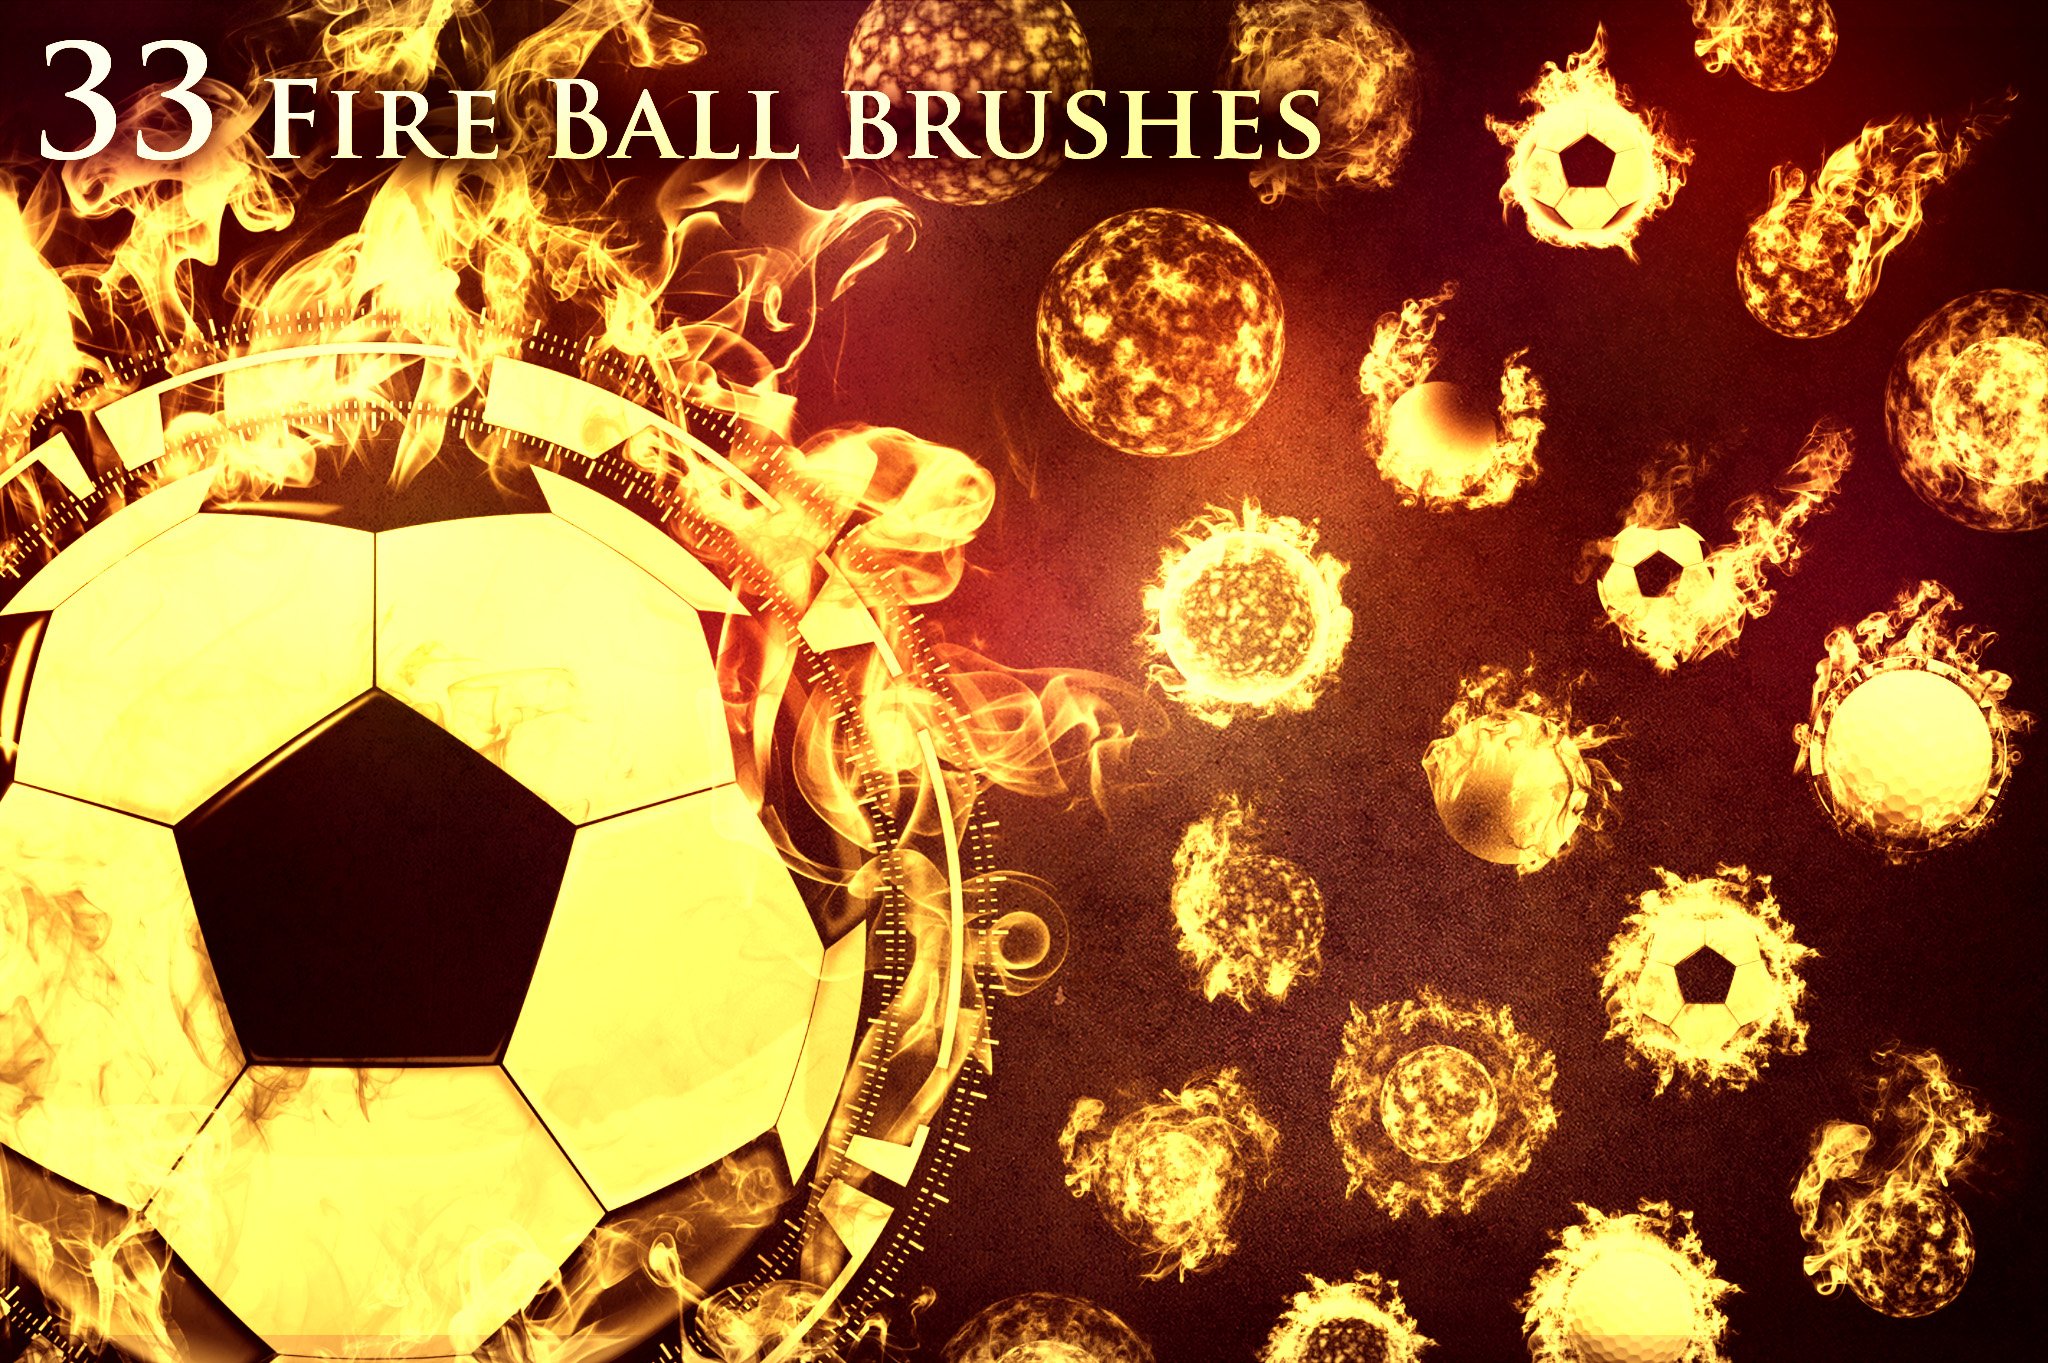 33 Fireball Brushescover image.